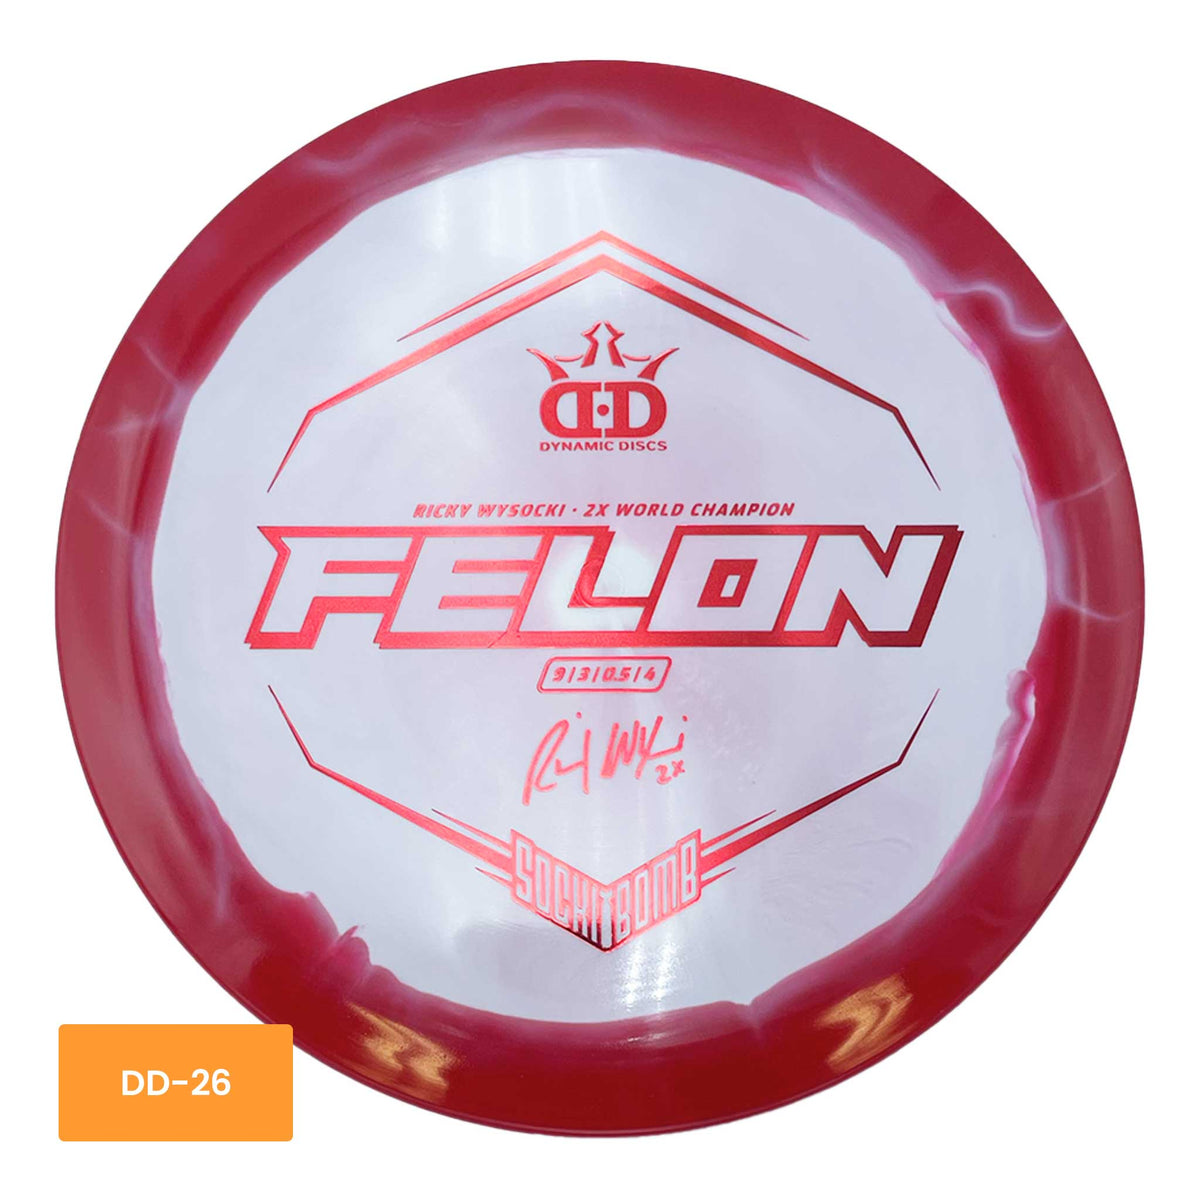 Dynamic Discs Fuzion Orbit Felon Ricky Wysocki Sockibomb fairway driver - Red